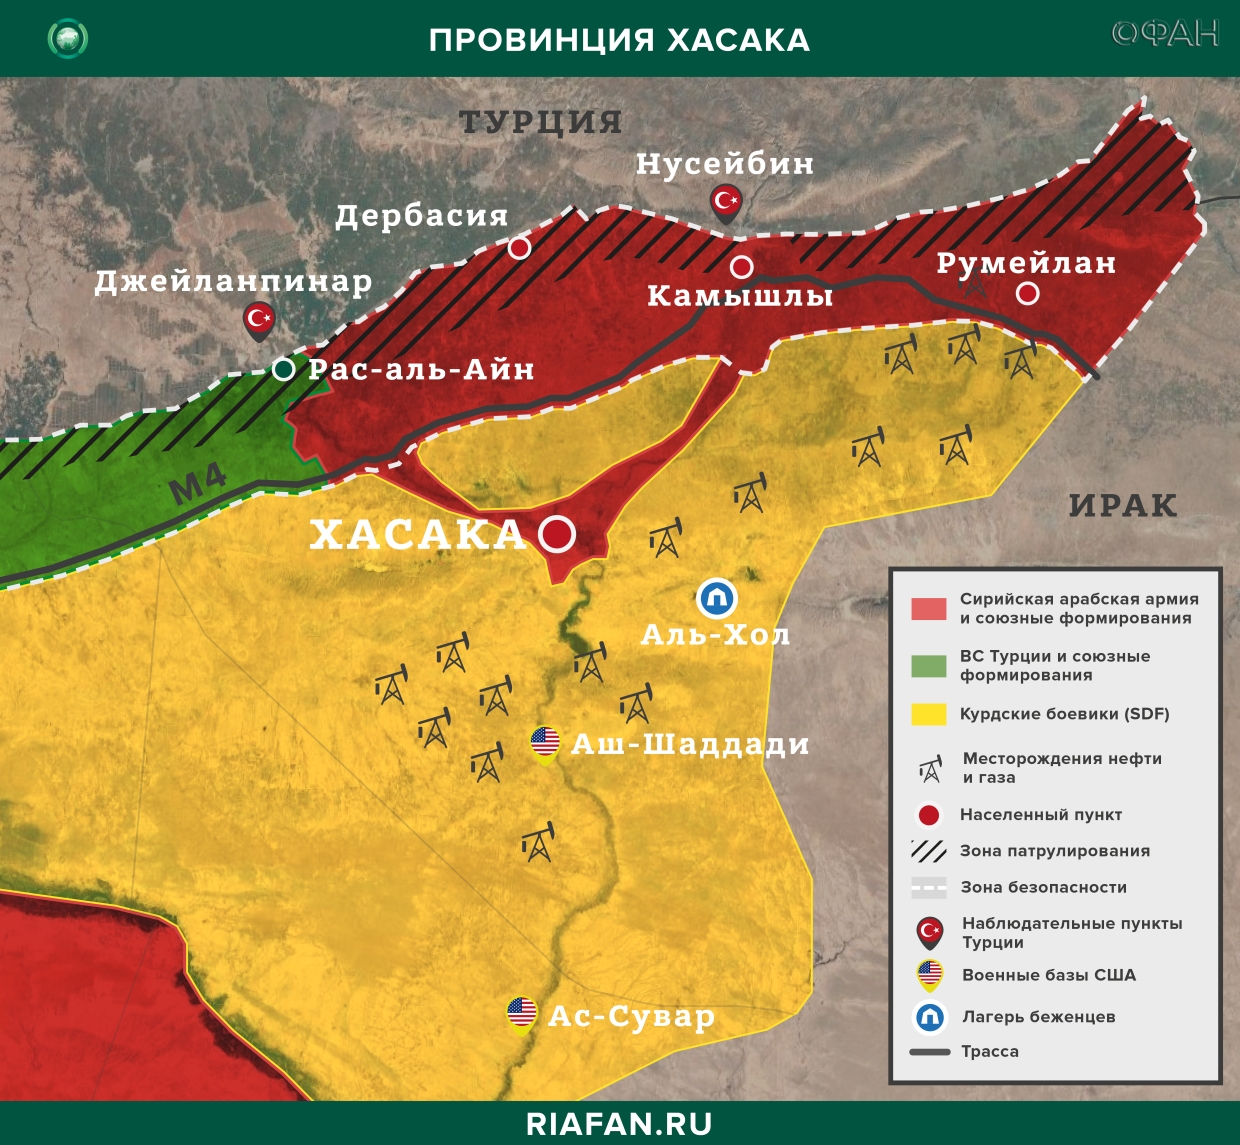 Nouvelles de Syrie 8 Mars 22.30: курдские боевики обстреляли мирных демонстрантов в Дейр-эз-Зоре, атака на блокпост SDF в Хасаке